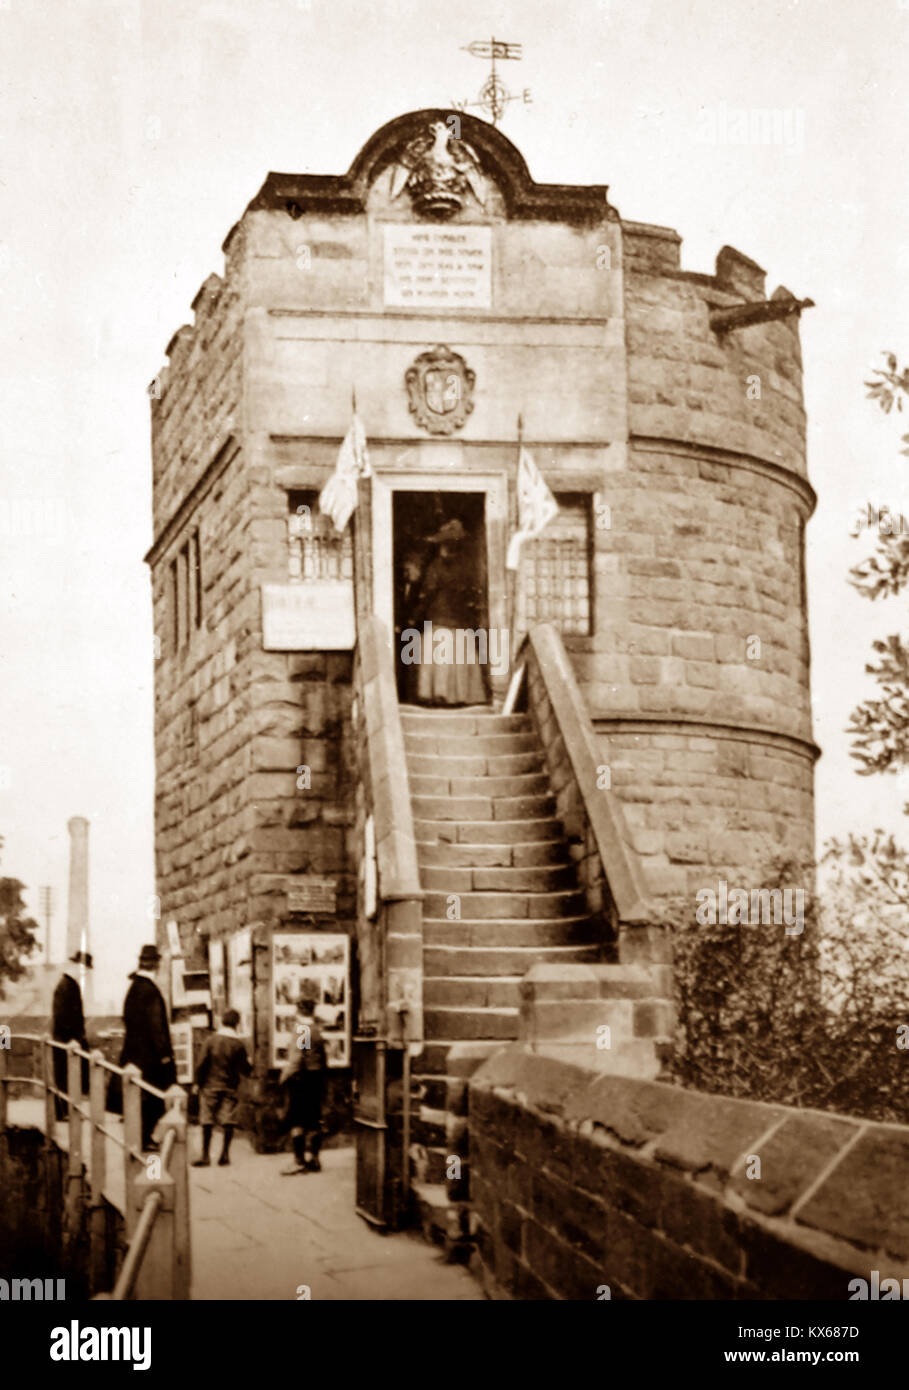 Le roi Charles' Watch Tower, remparts, Chester, début des années 1900 Banque D'Images